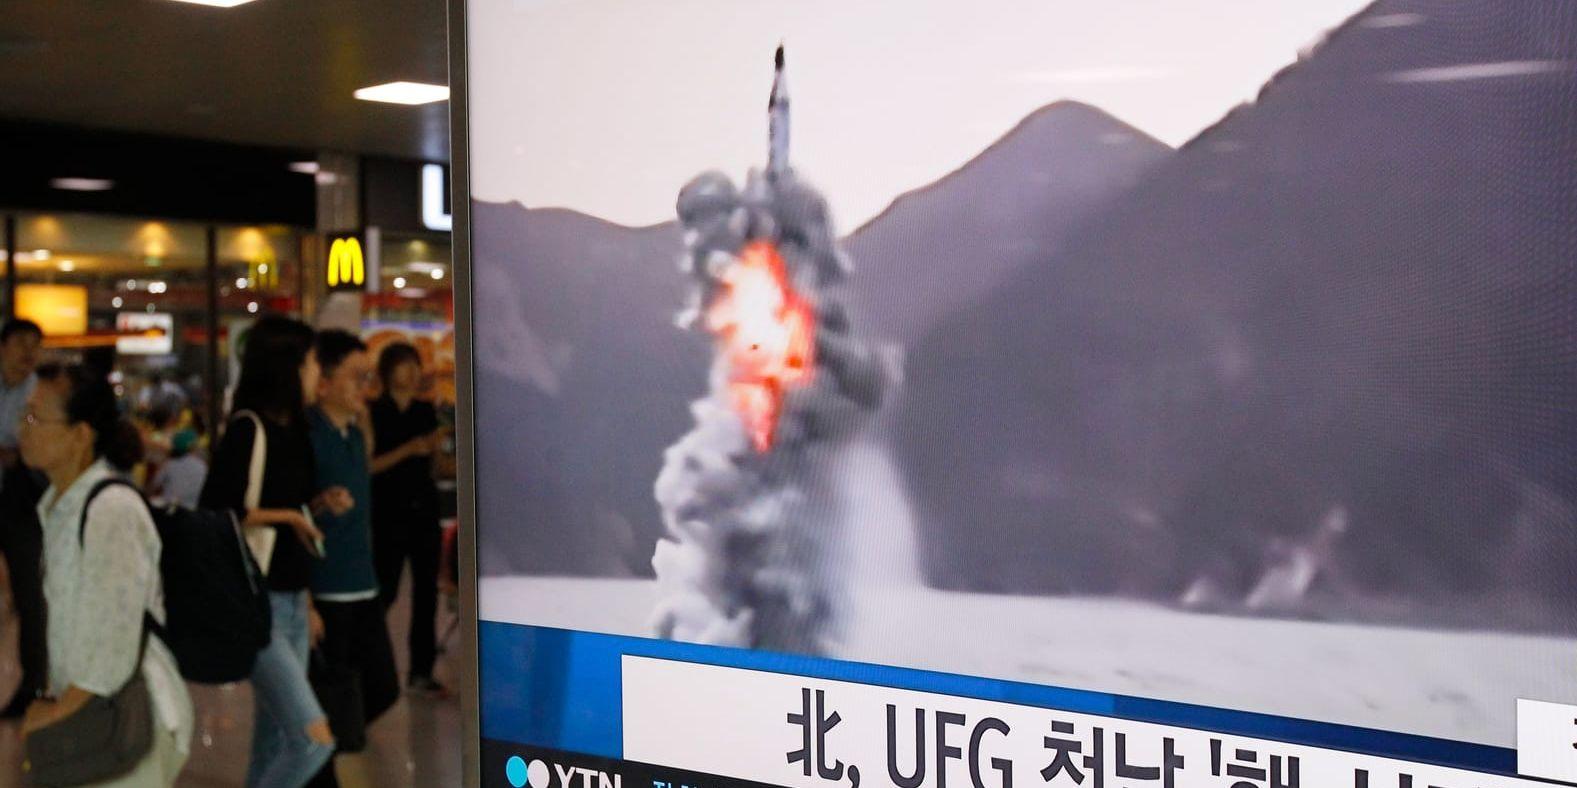 Människor passerar ett nyhetsinslag på tv om robotuppskjutningen, med arkivbilder från tidigare testskjutningar från Nordkorea. Rubriken lyder "Nordkorea skjuter upp robot under UFG (militärövningen med USA)".